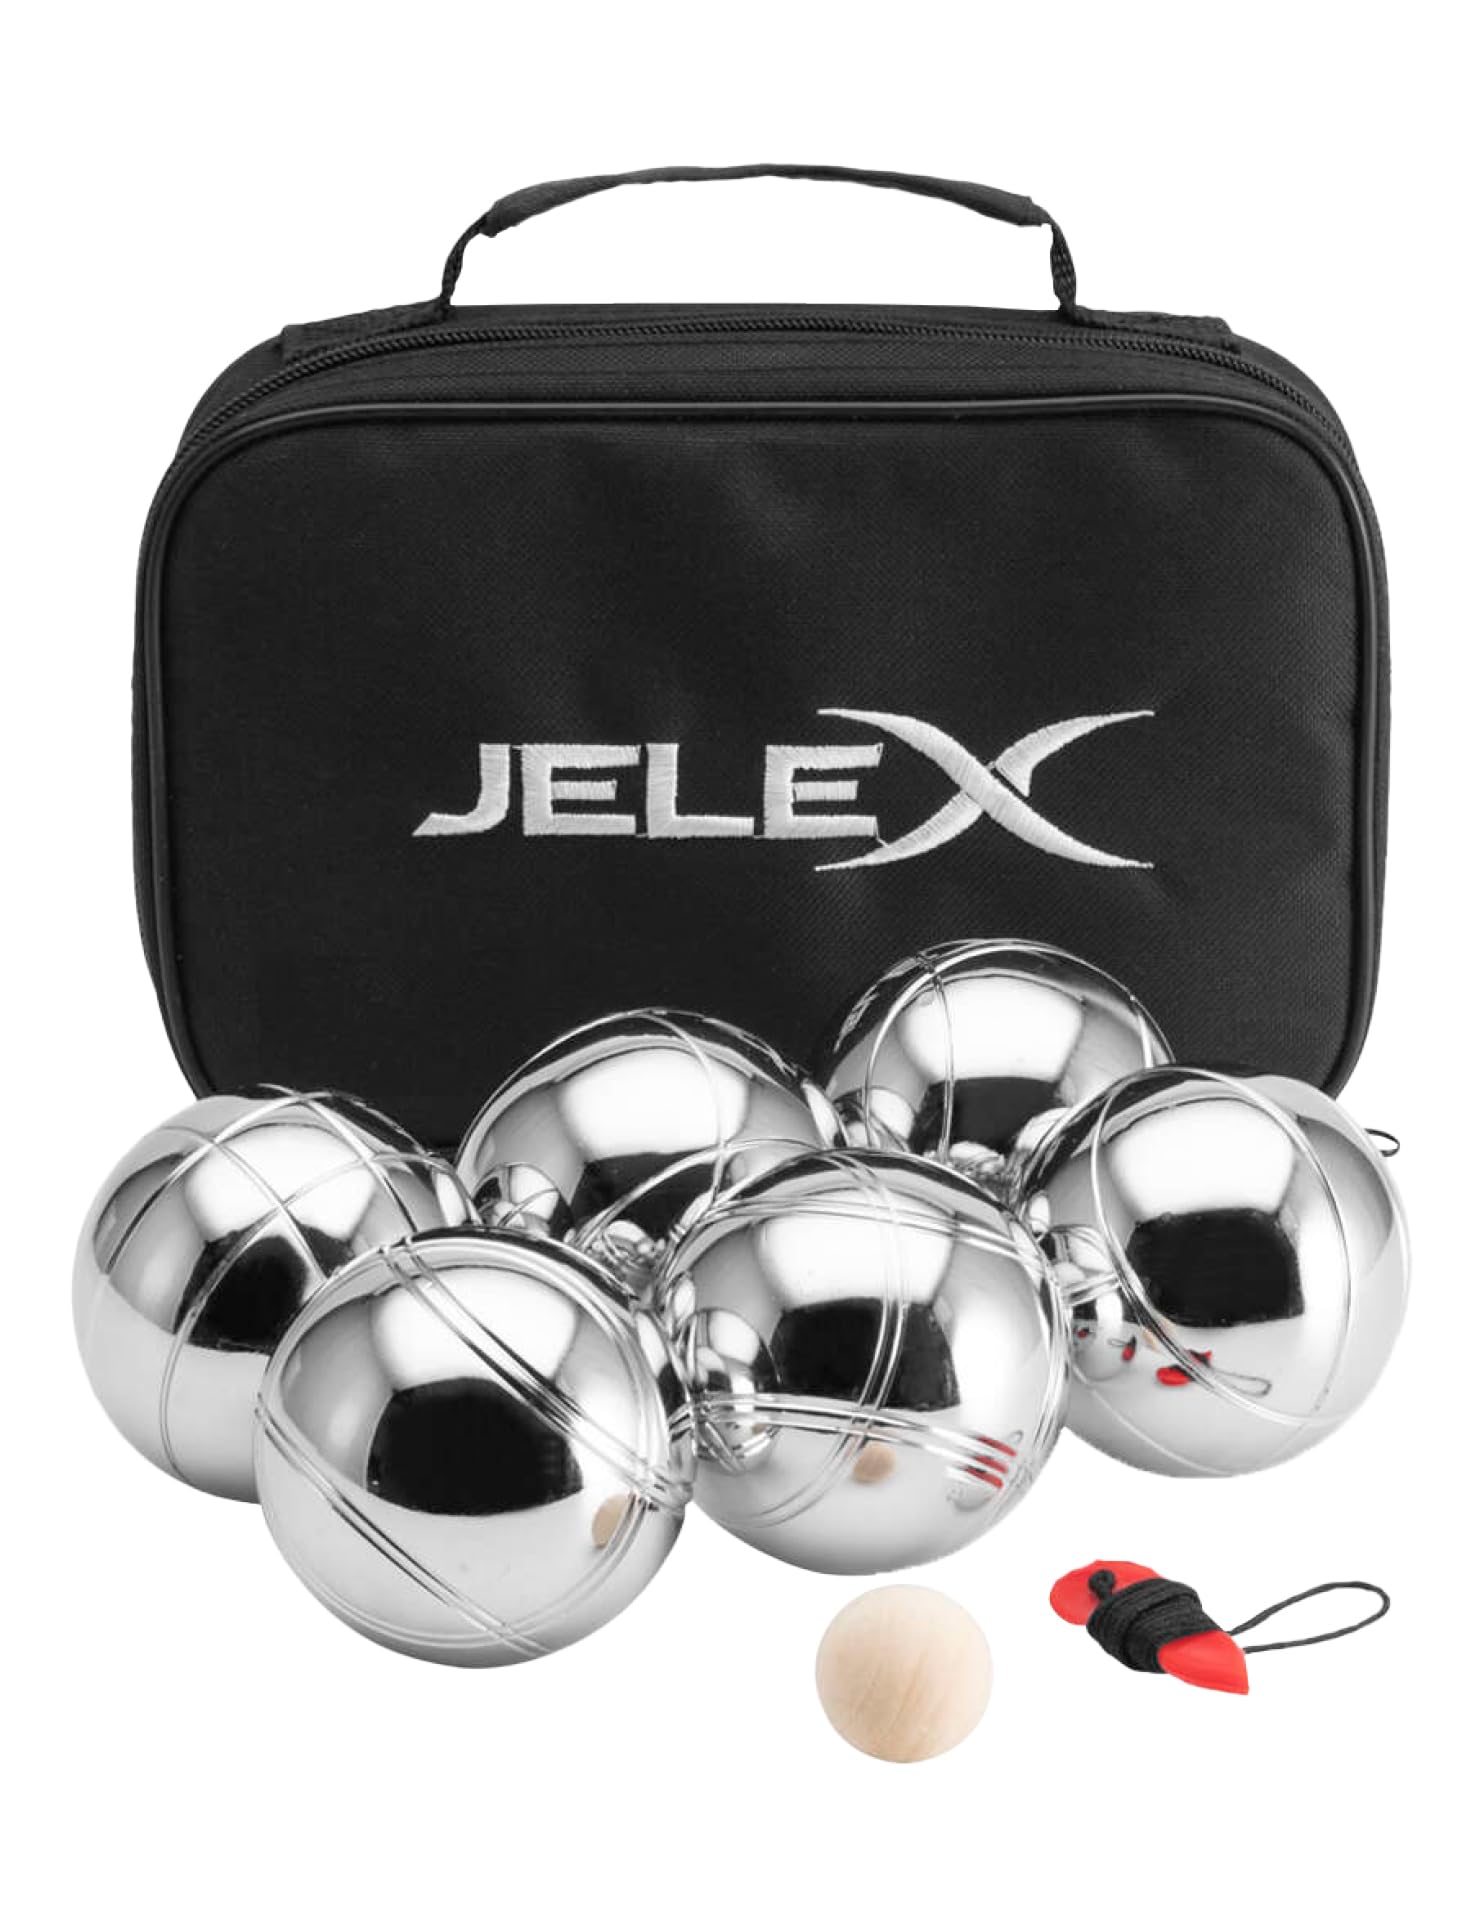 JELEX Throwback Boccia Boule 6er-Set Metall-Kugeln mit DREI verschiedenen Musterungen, Abstandsmesser, Holz-Markierungskugel, inkl. Tragetasche mit Tragegriff, für Erwachsene und Kinder